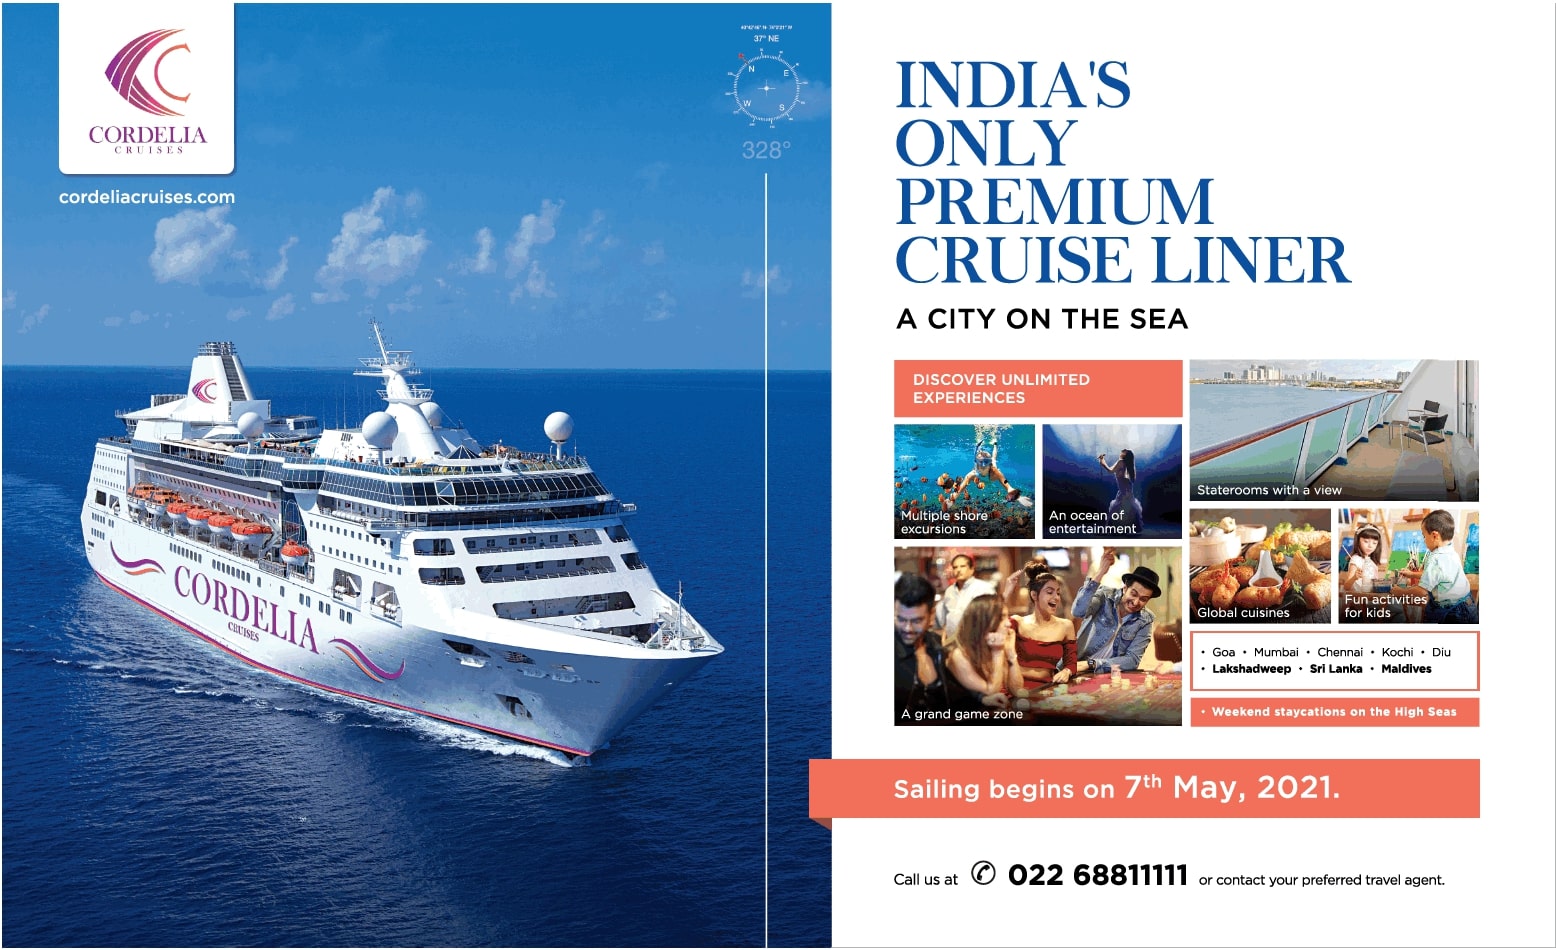 cordelia-cruises-indias-only-premium-cruise-liner-ad-times-of-india-mumbai-03-04-2021